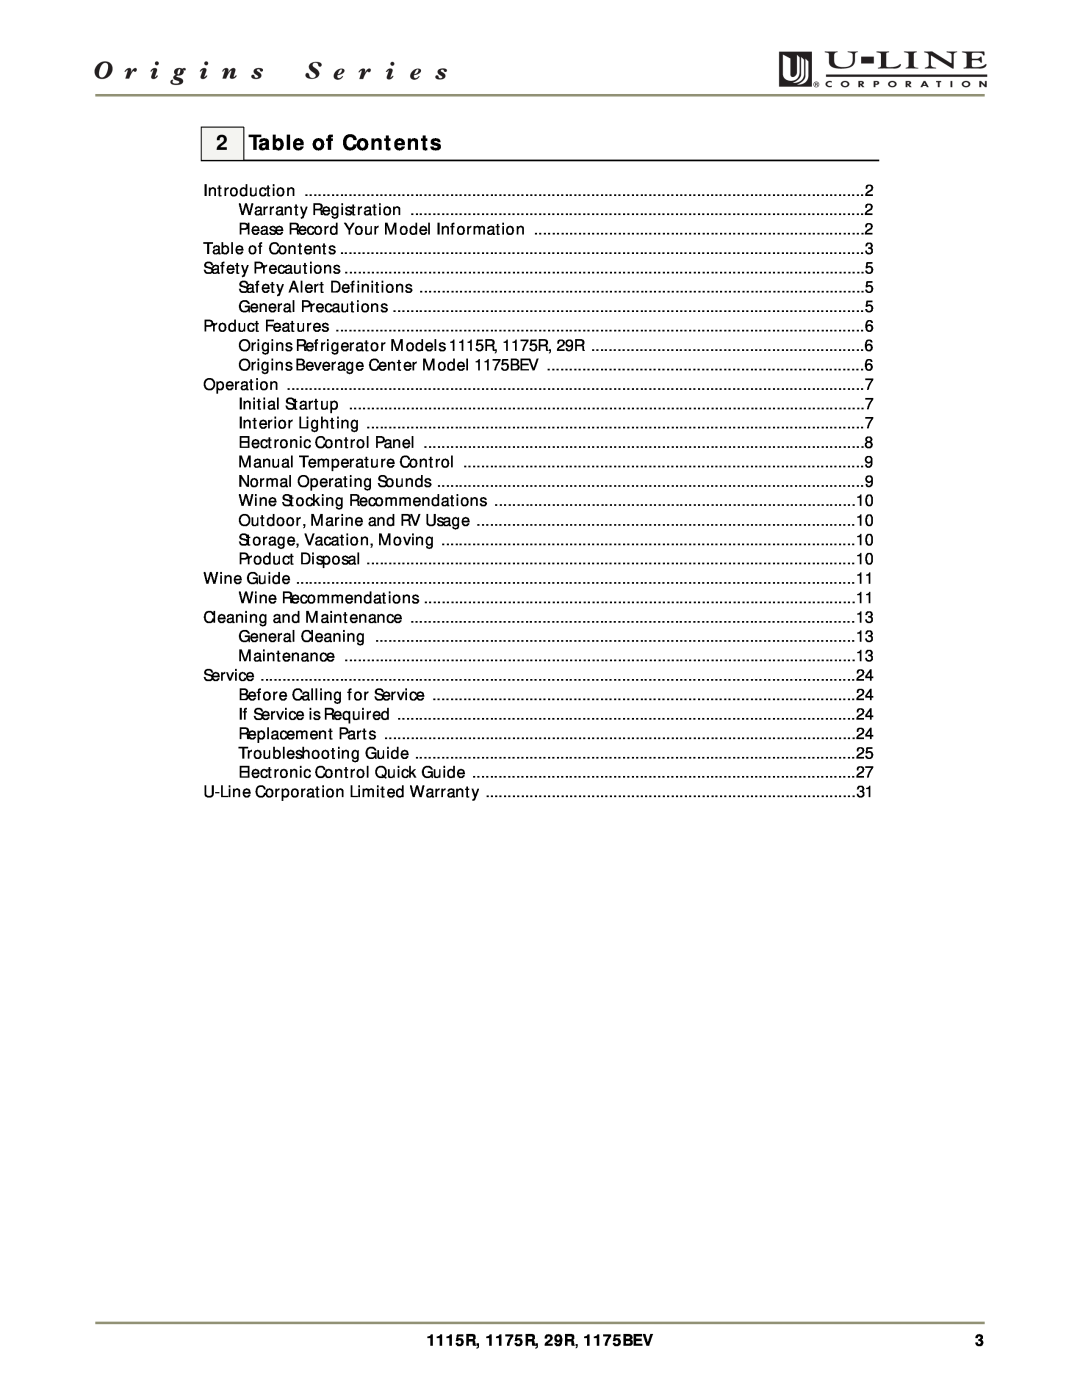 U-Line manual Table of Contents, 1115R, 1175R, 29R, 1175BEV 